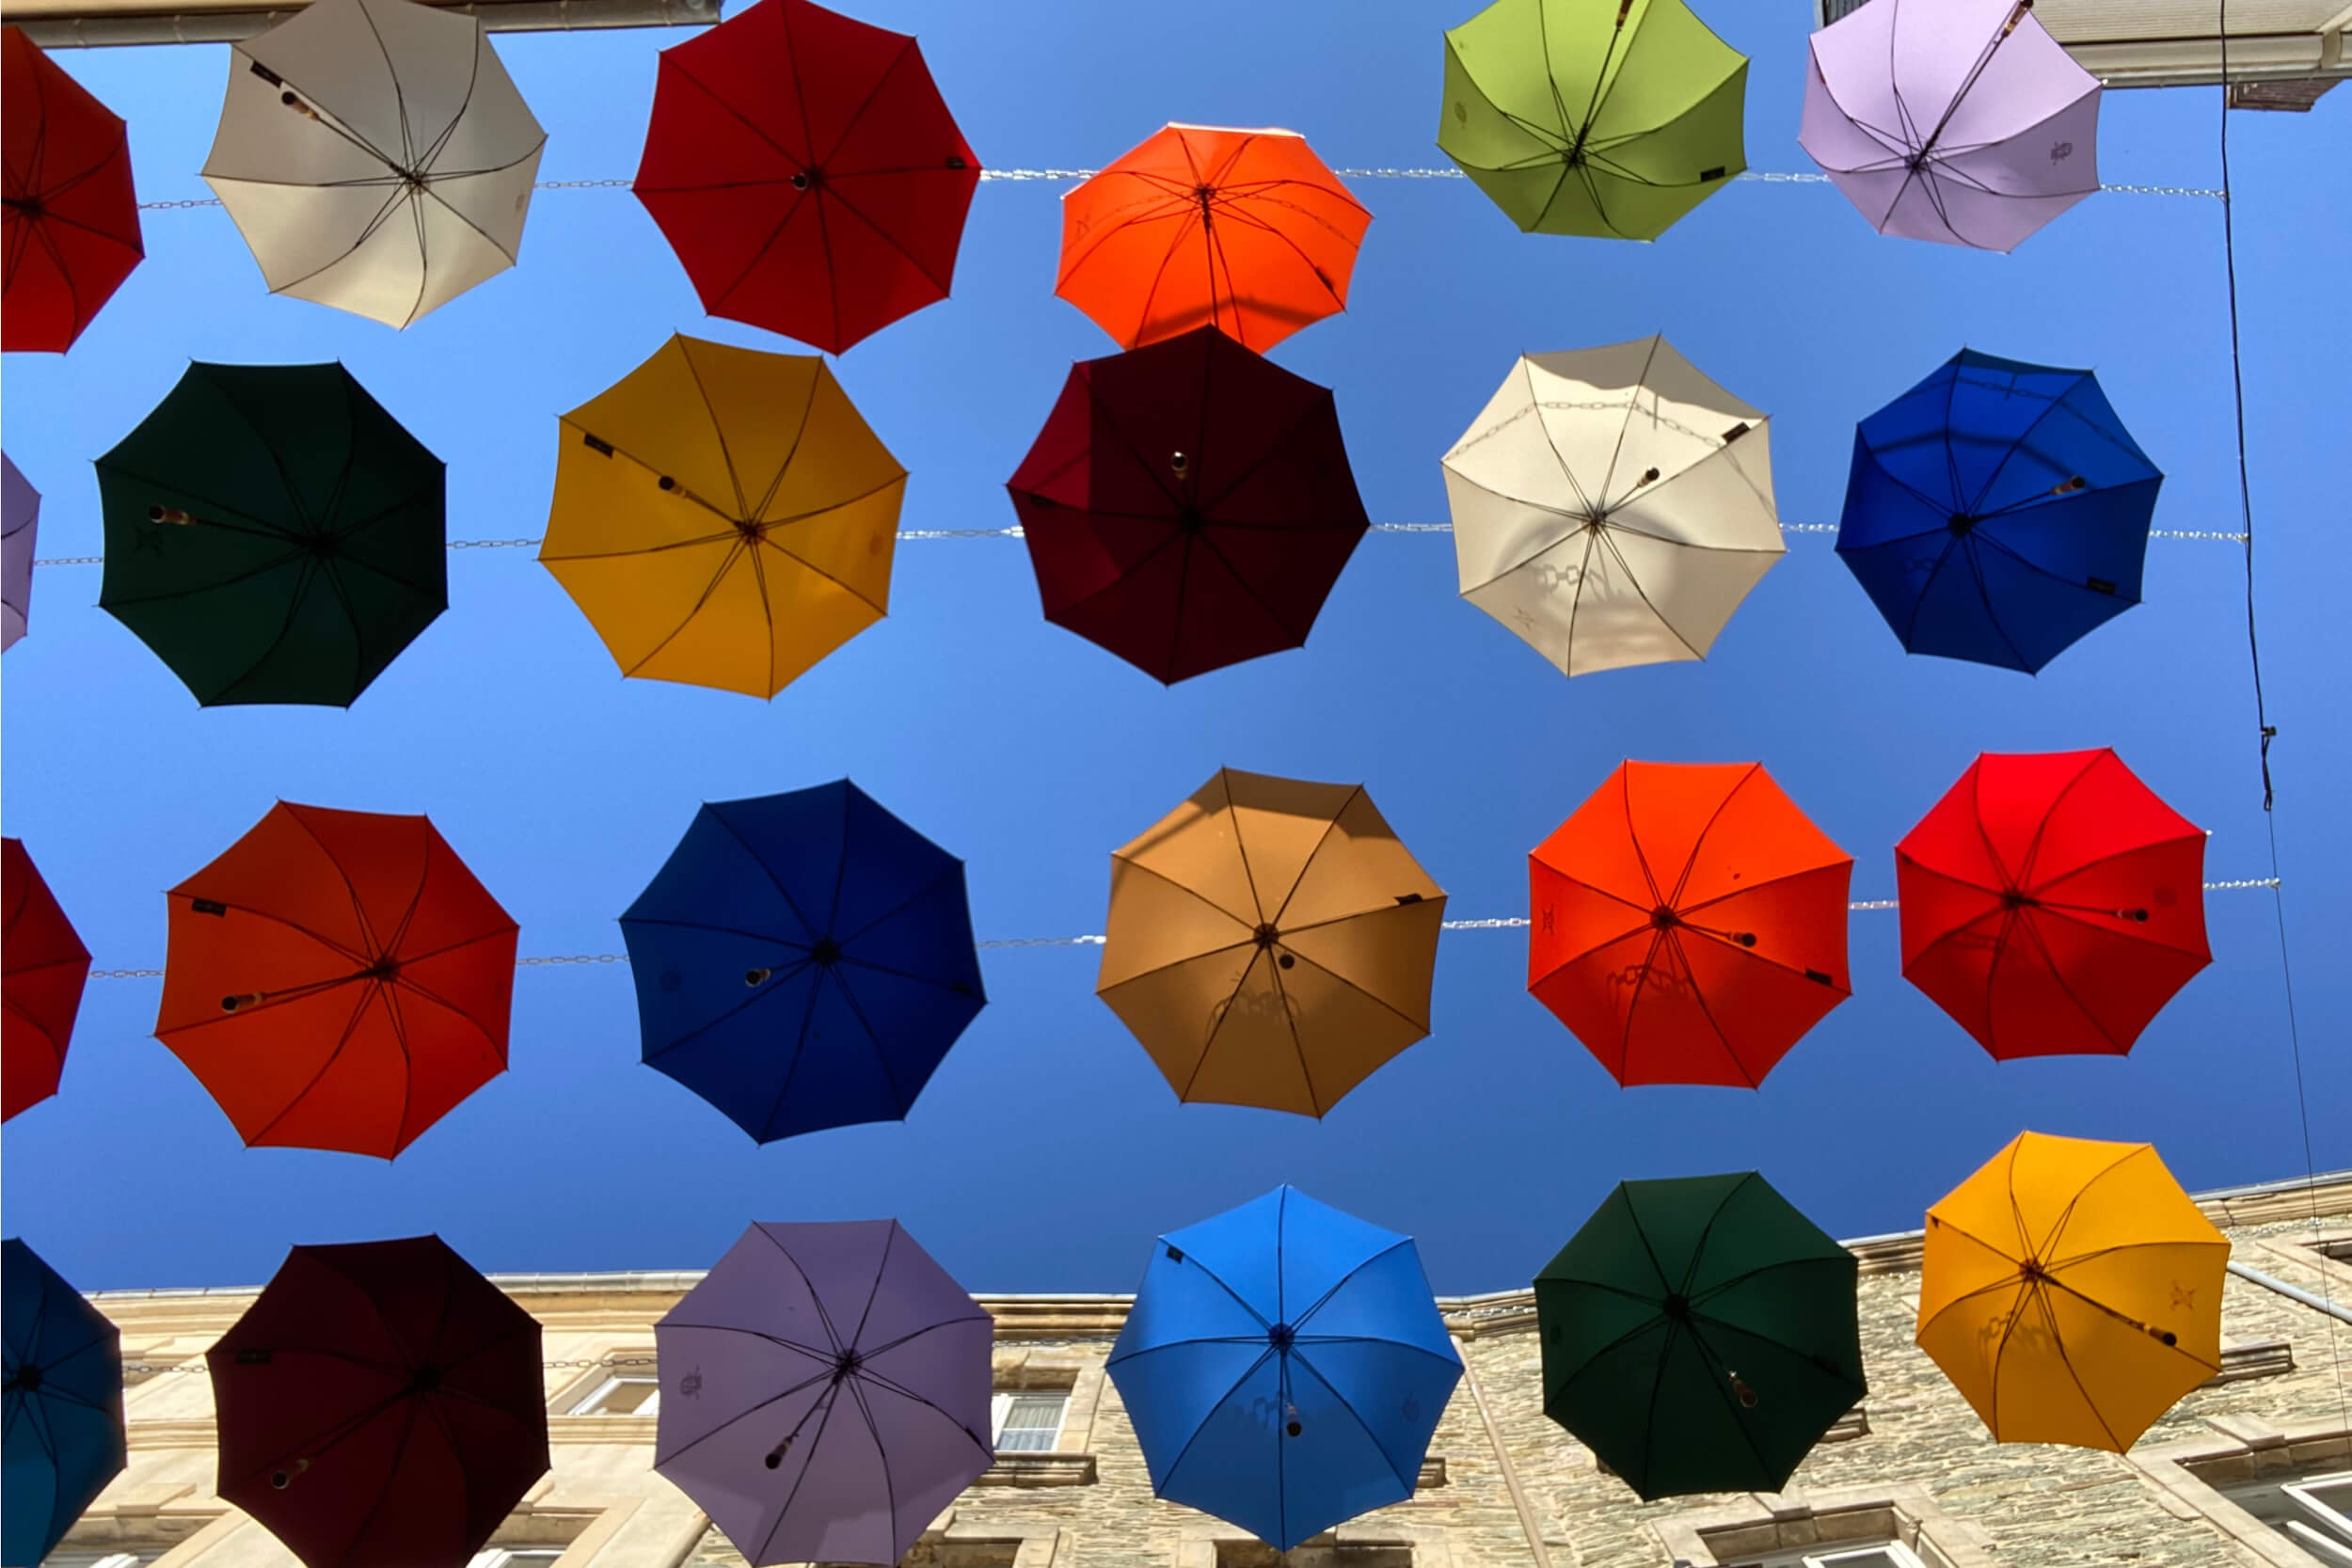 Parapluies de Cherbourg